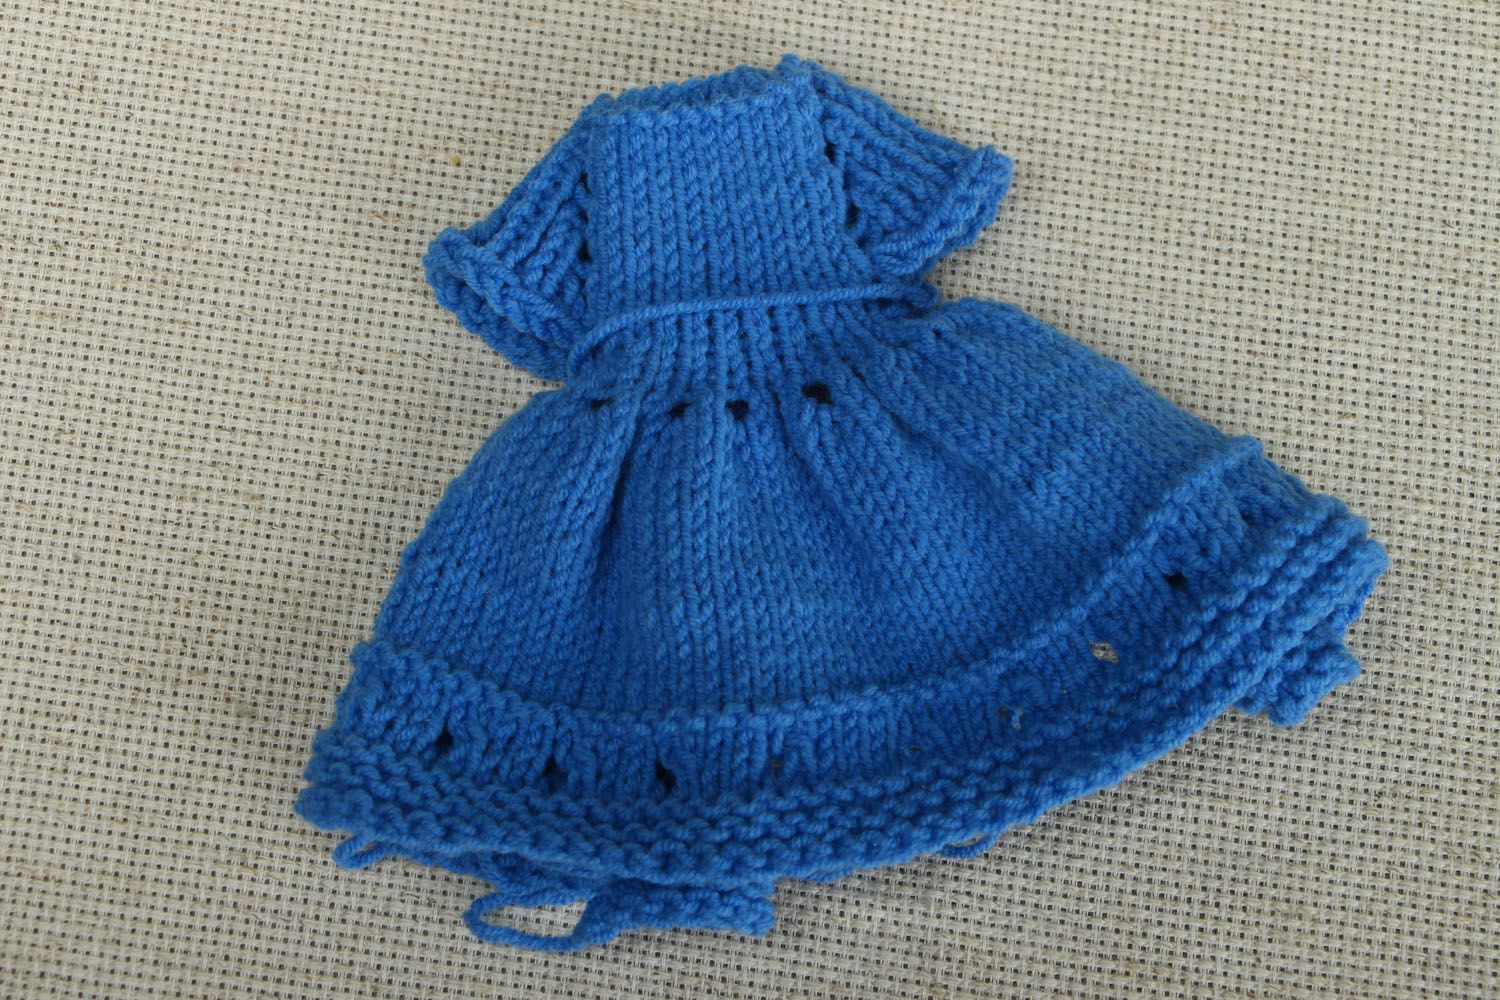 Robe de poupée tricotée faite main photo 1